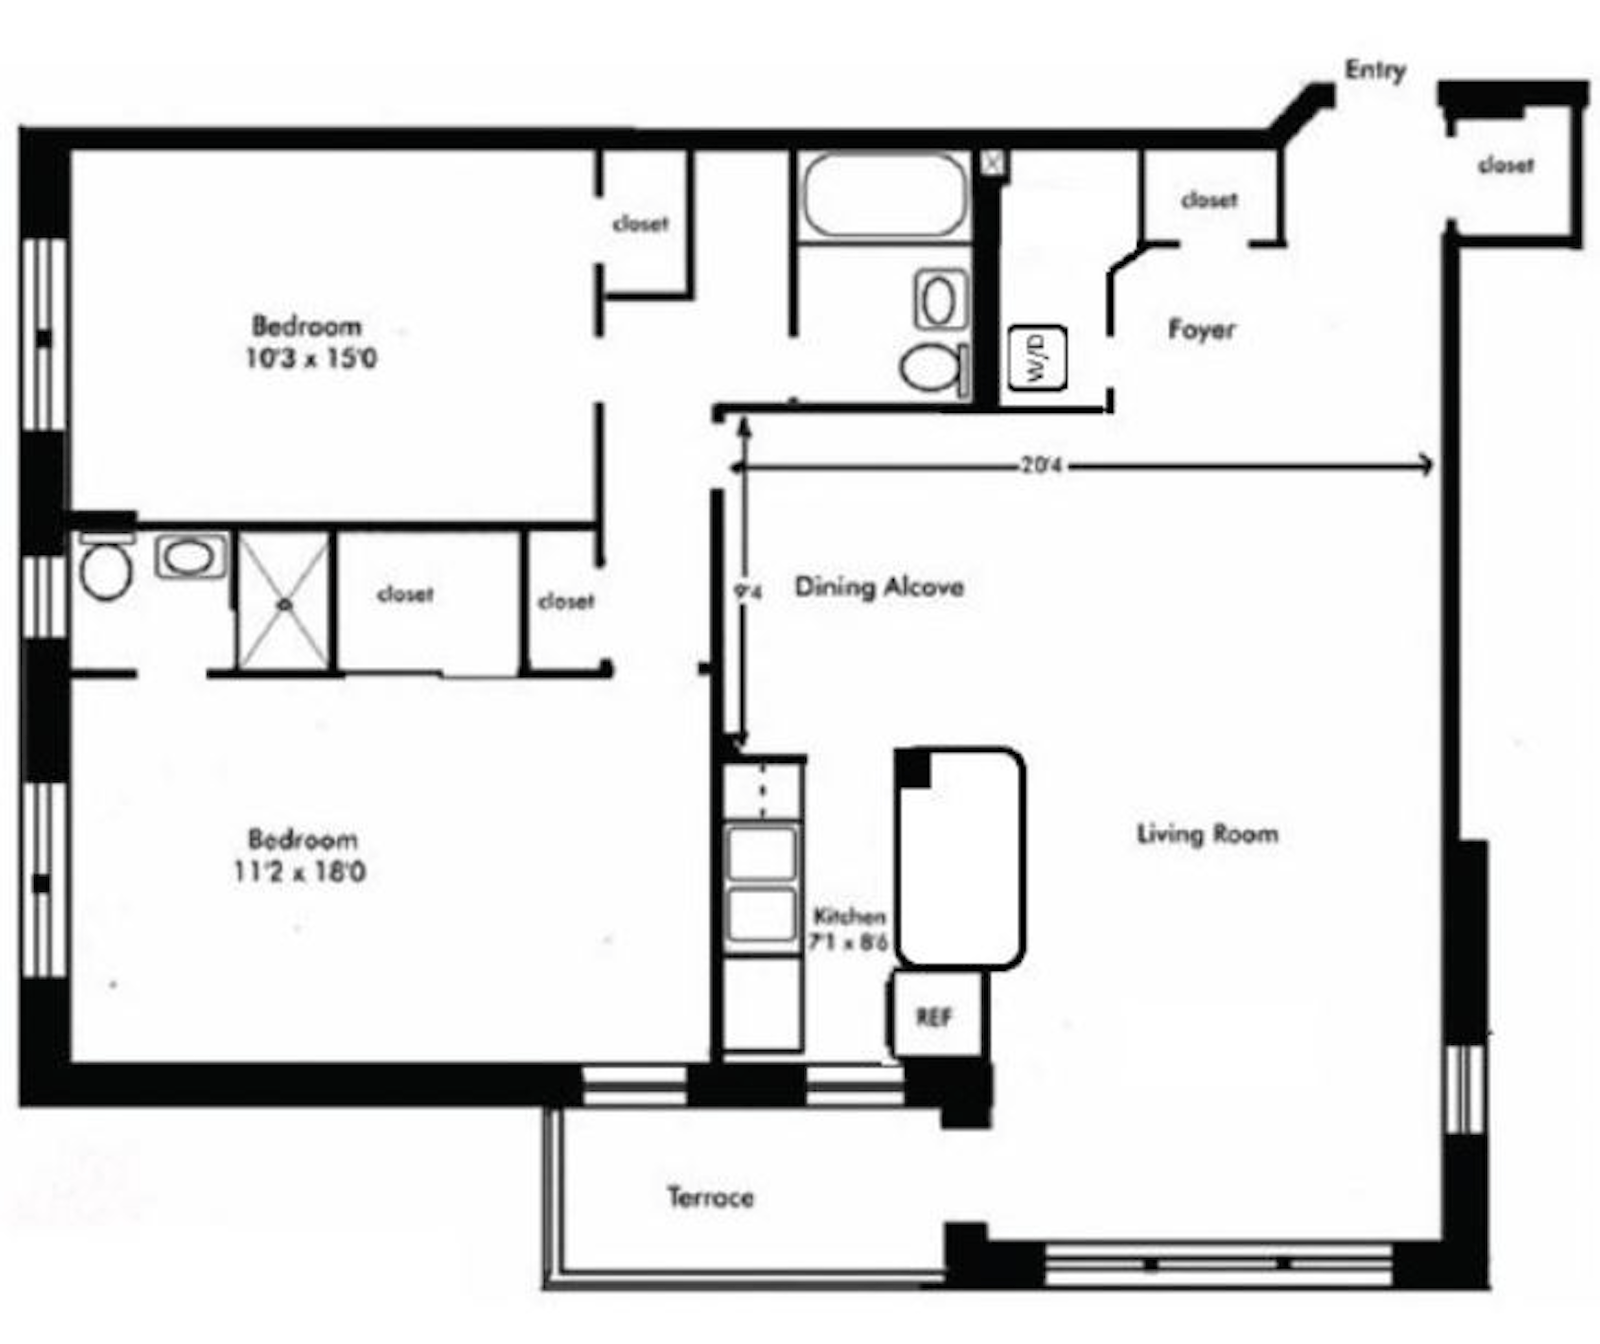 Floorplan for 3750 Hudson Manor Terrace, 4BE